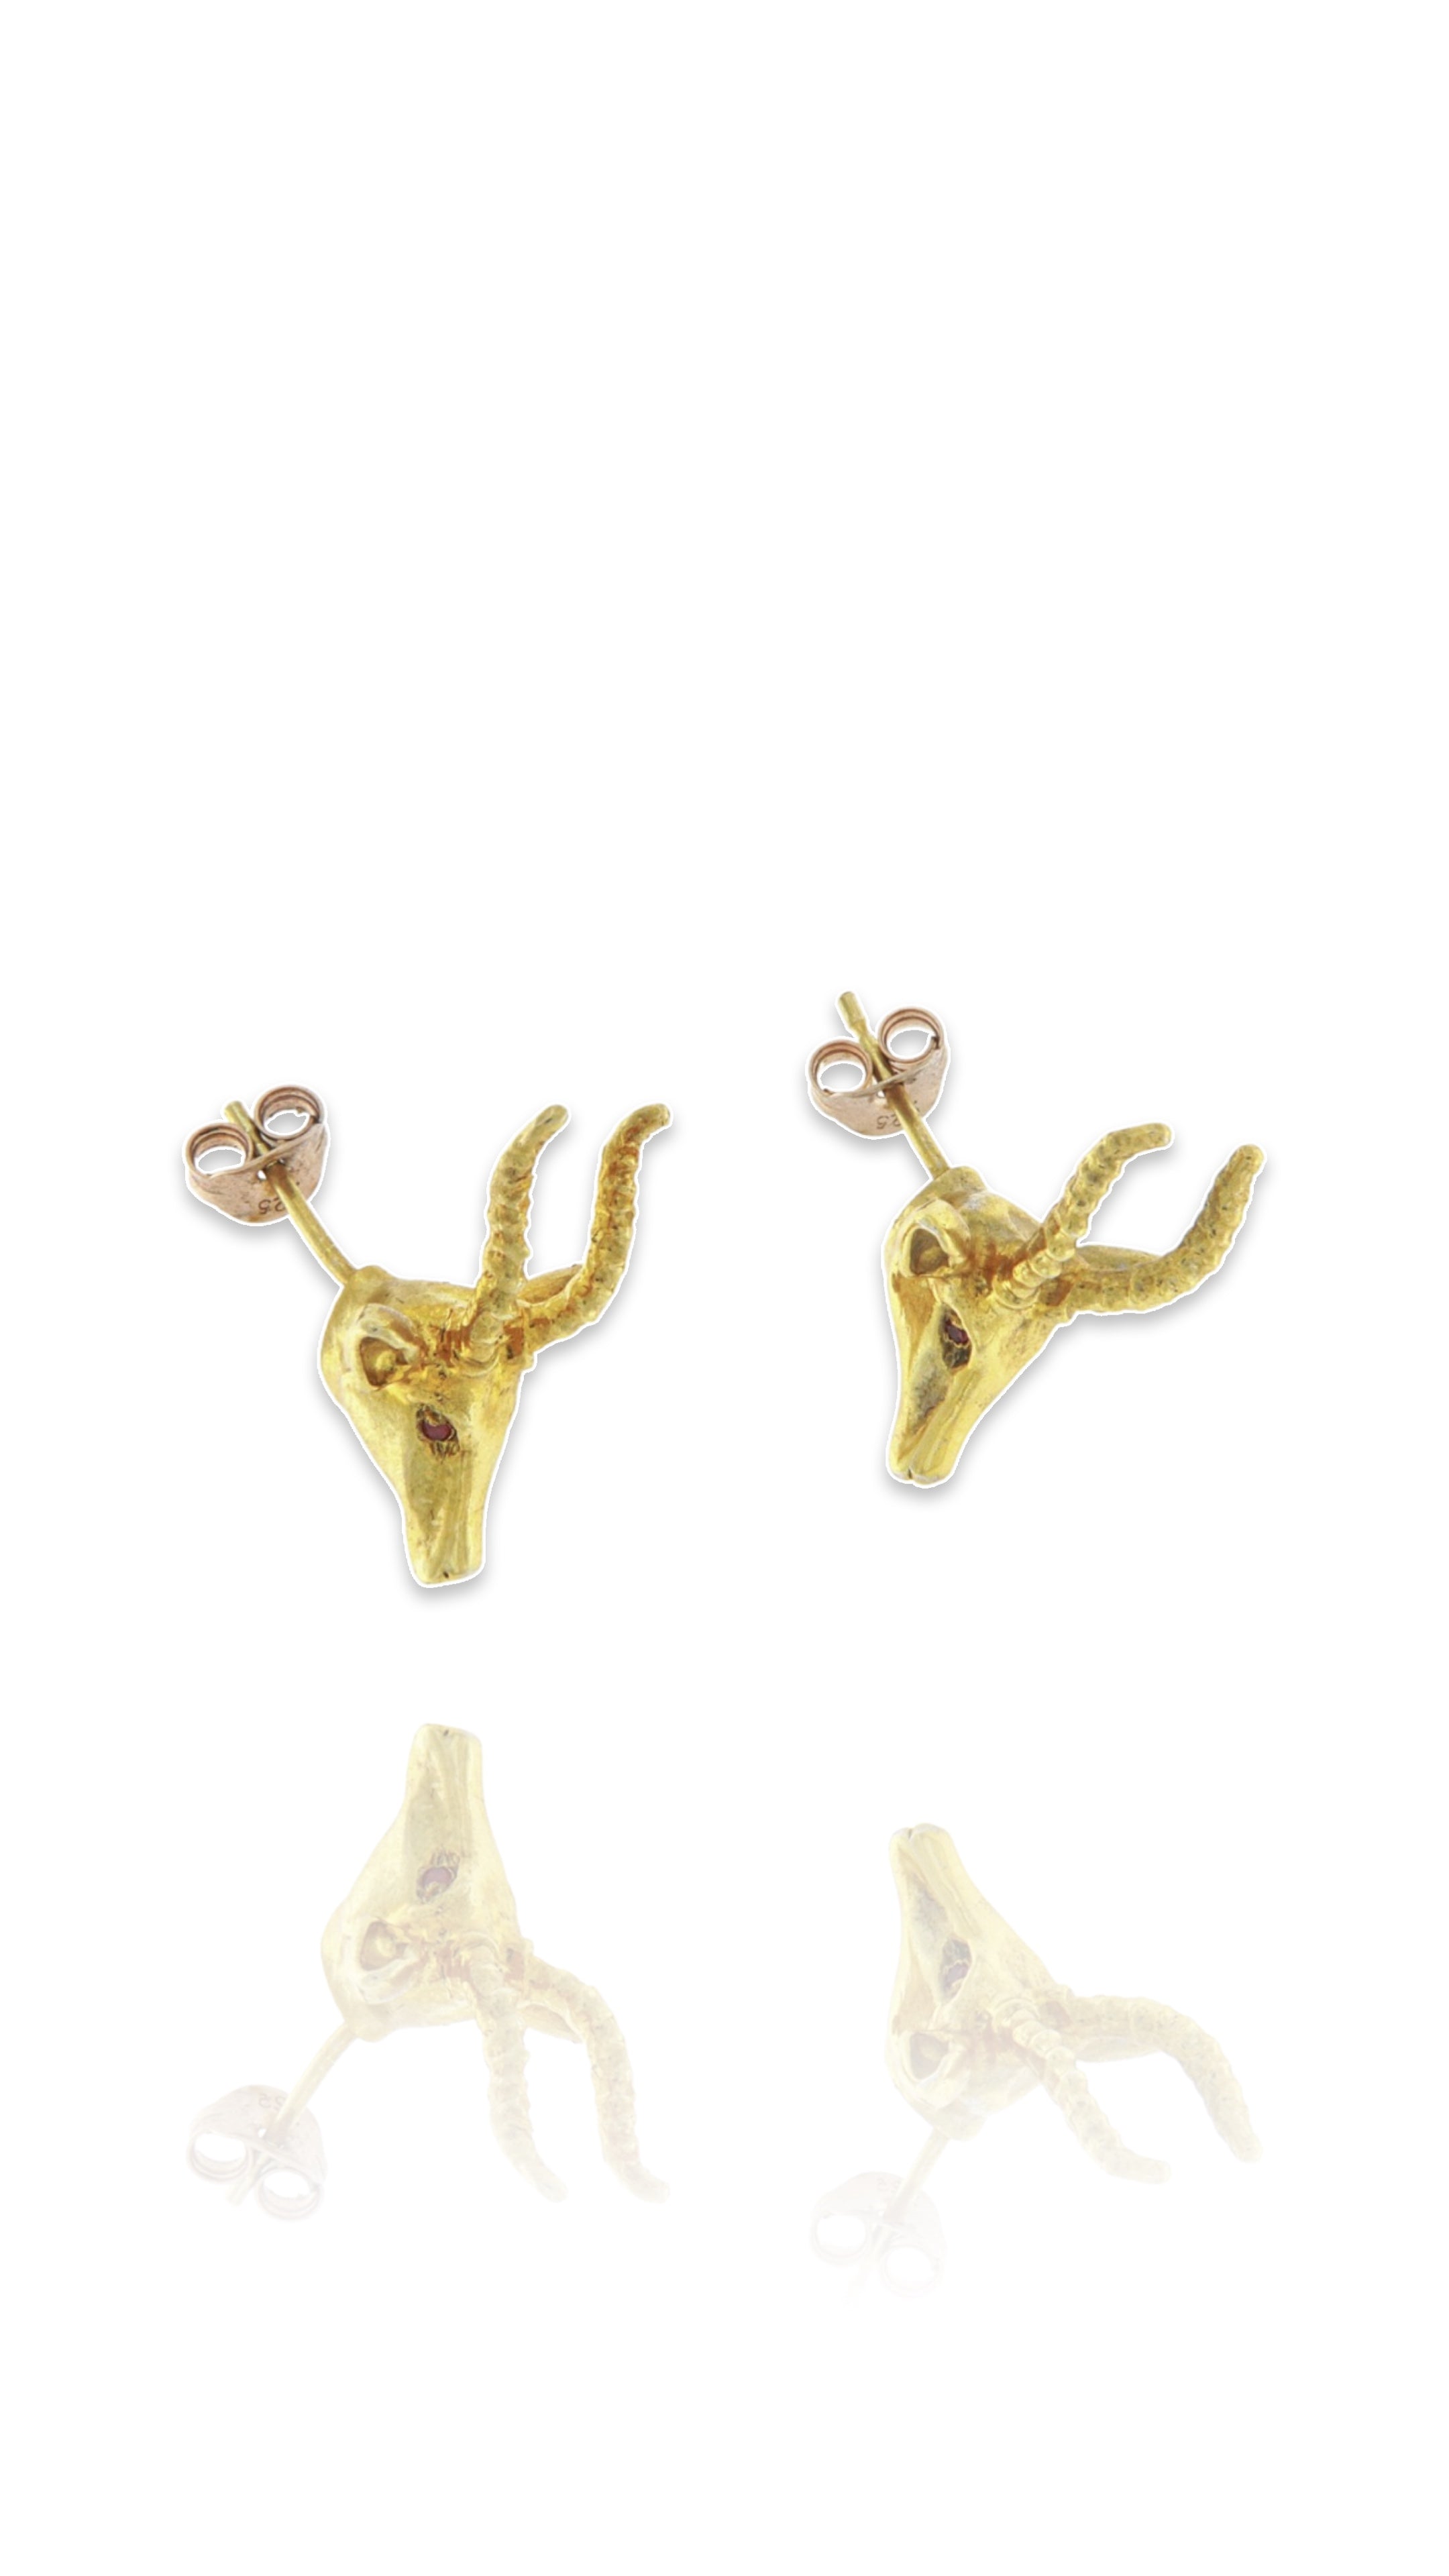 18ct gold Gazelle earrings